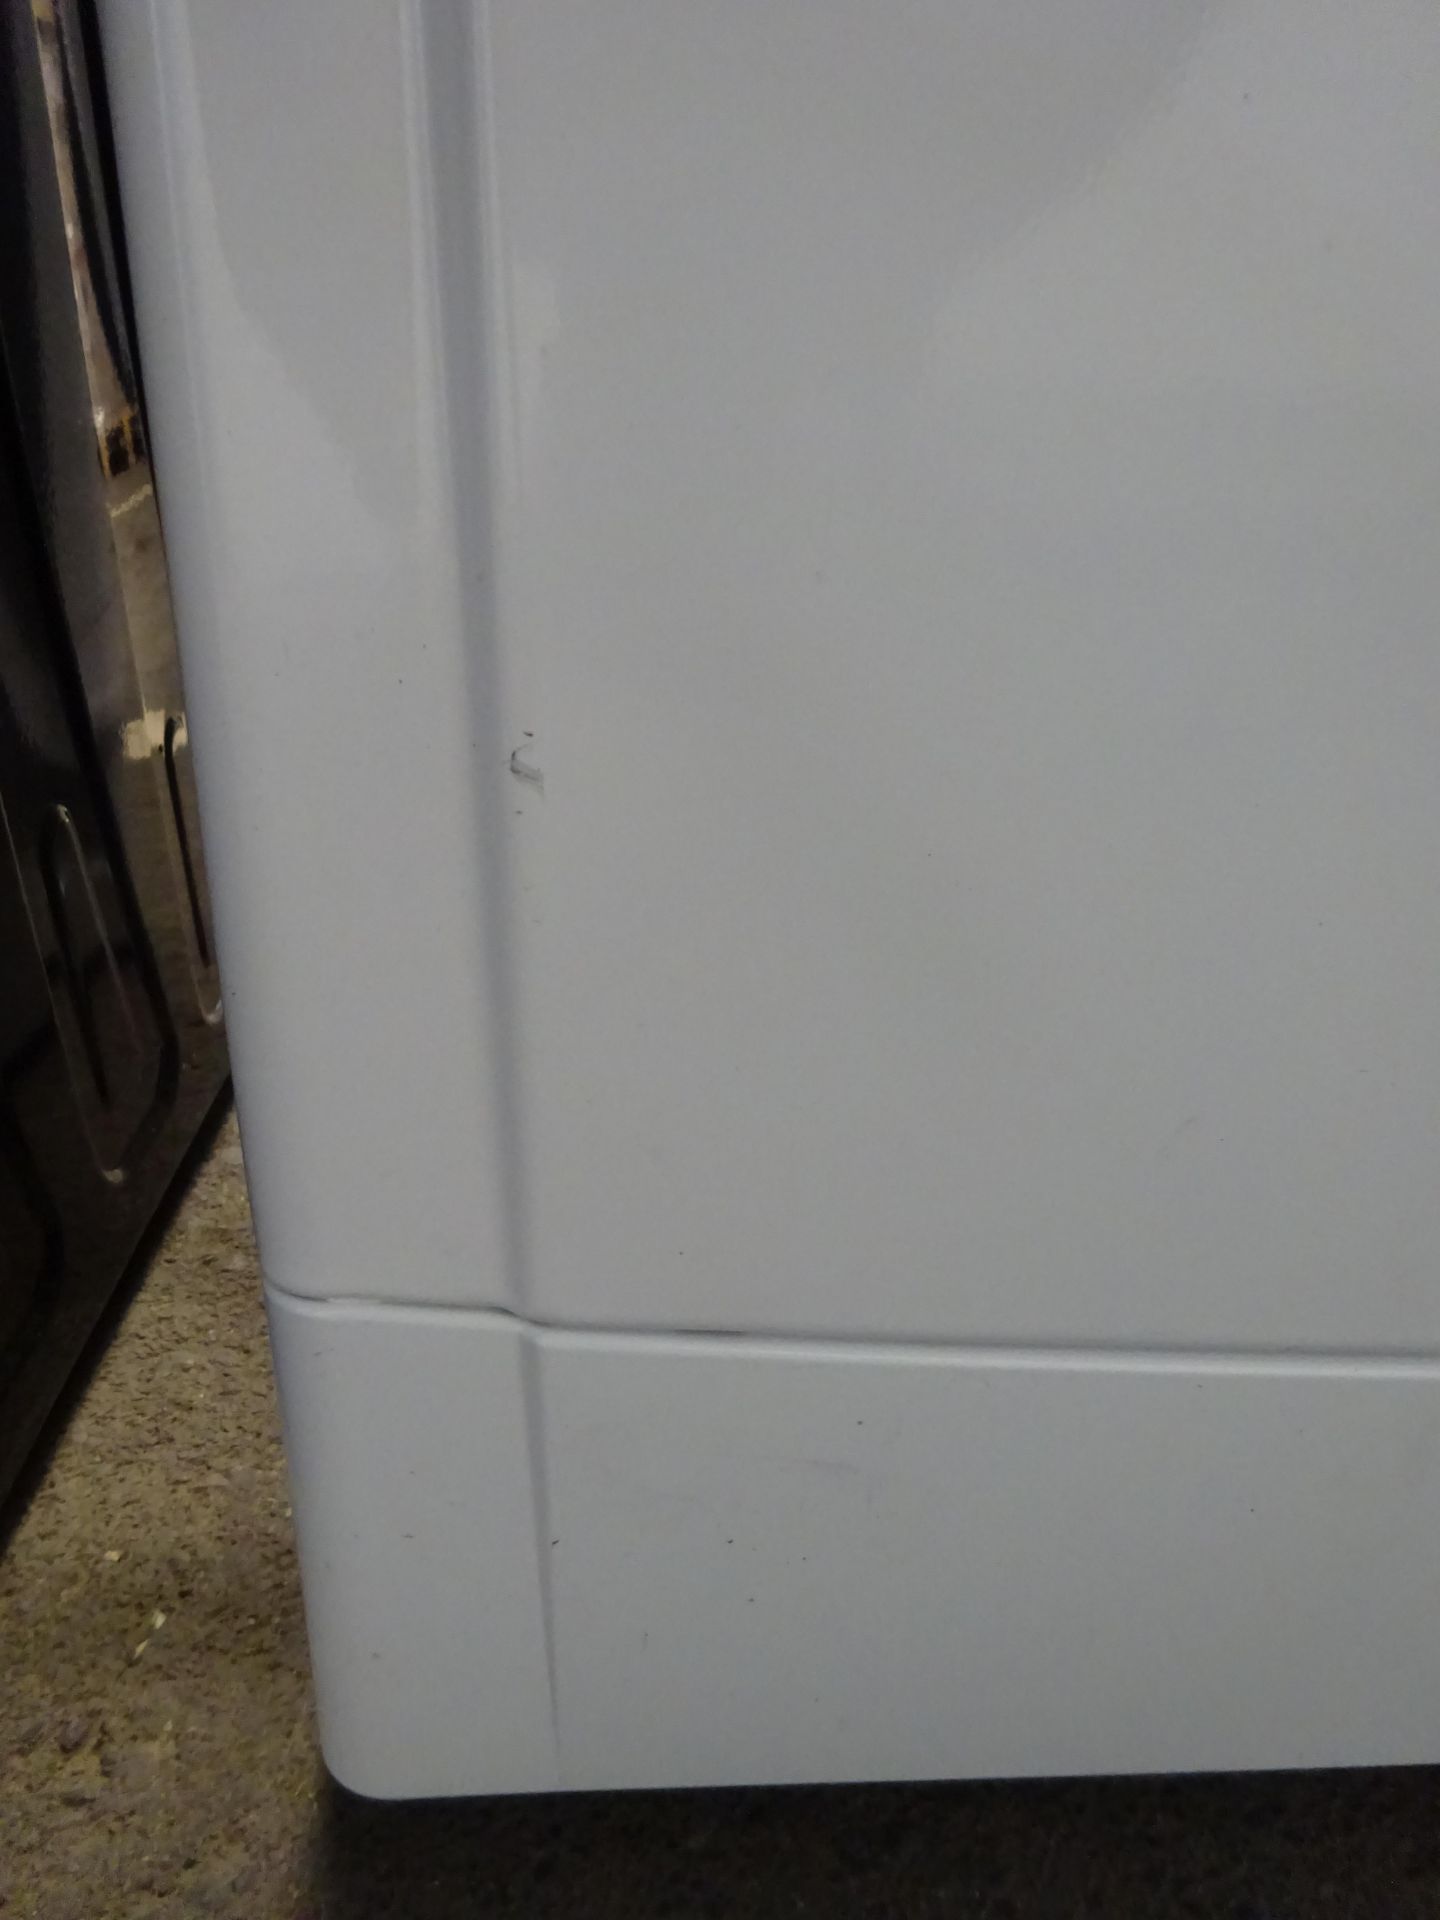 Indesit EcoTime IWC71252W 7KG Washing Machine - White - ARGOS RRP £199.99 - Image 4 of 5